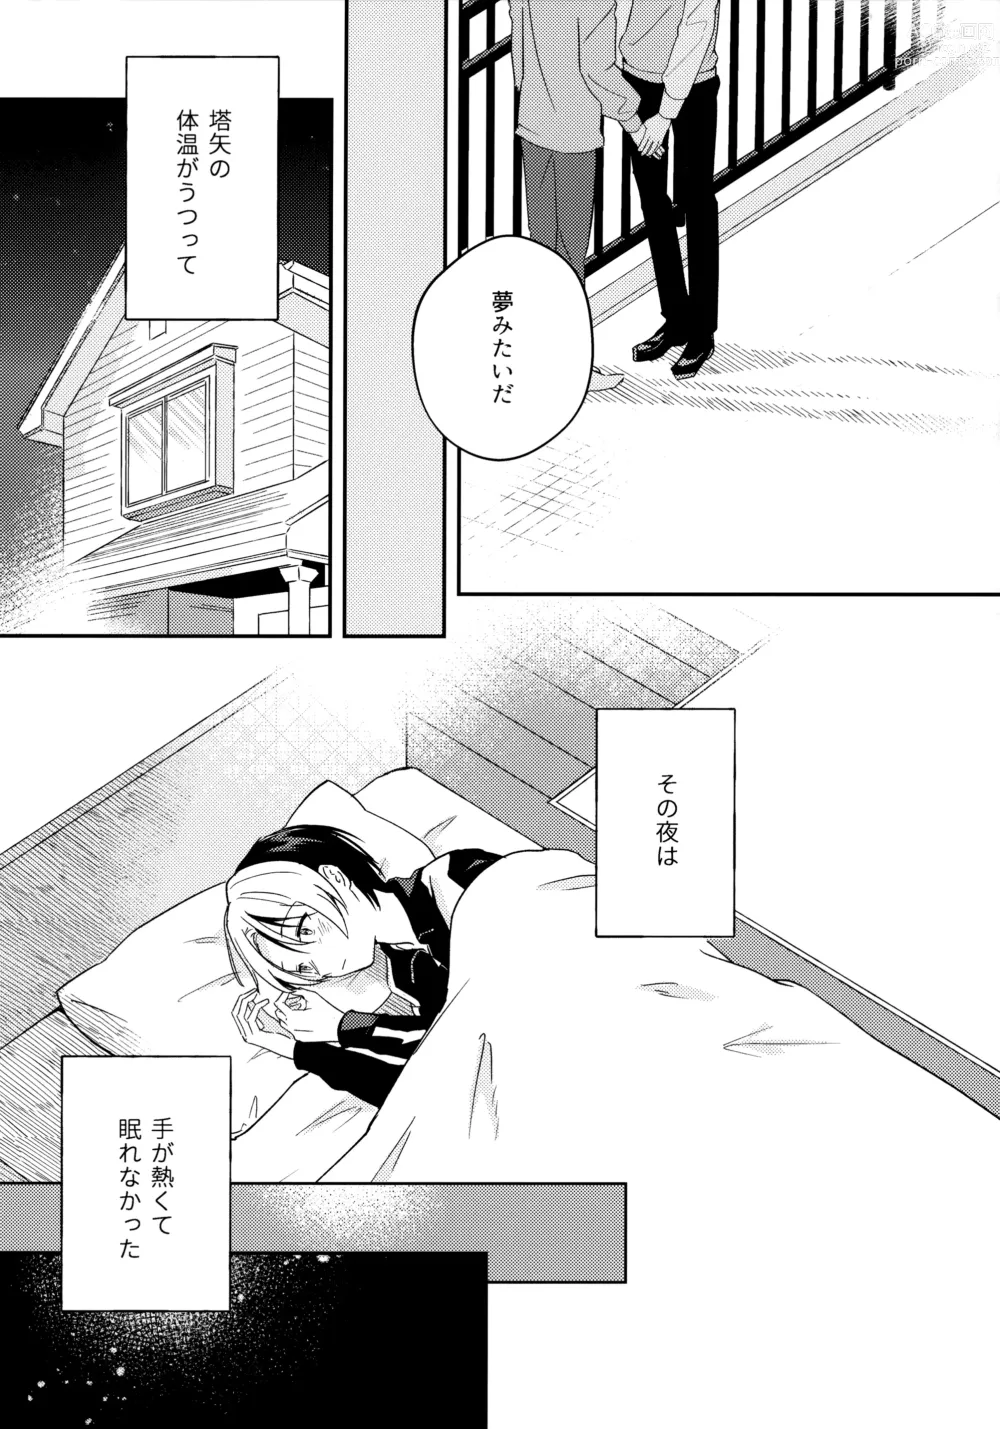 Page 6 of doujinshi Samenai Netsu wa yoi no Iro